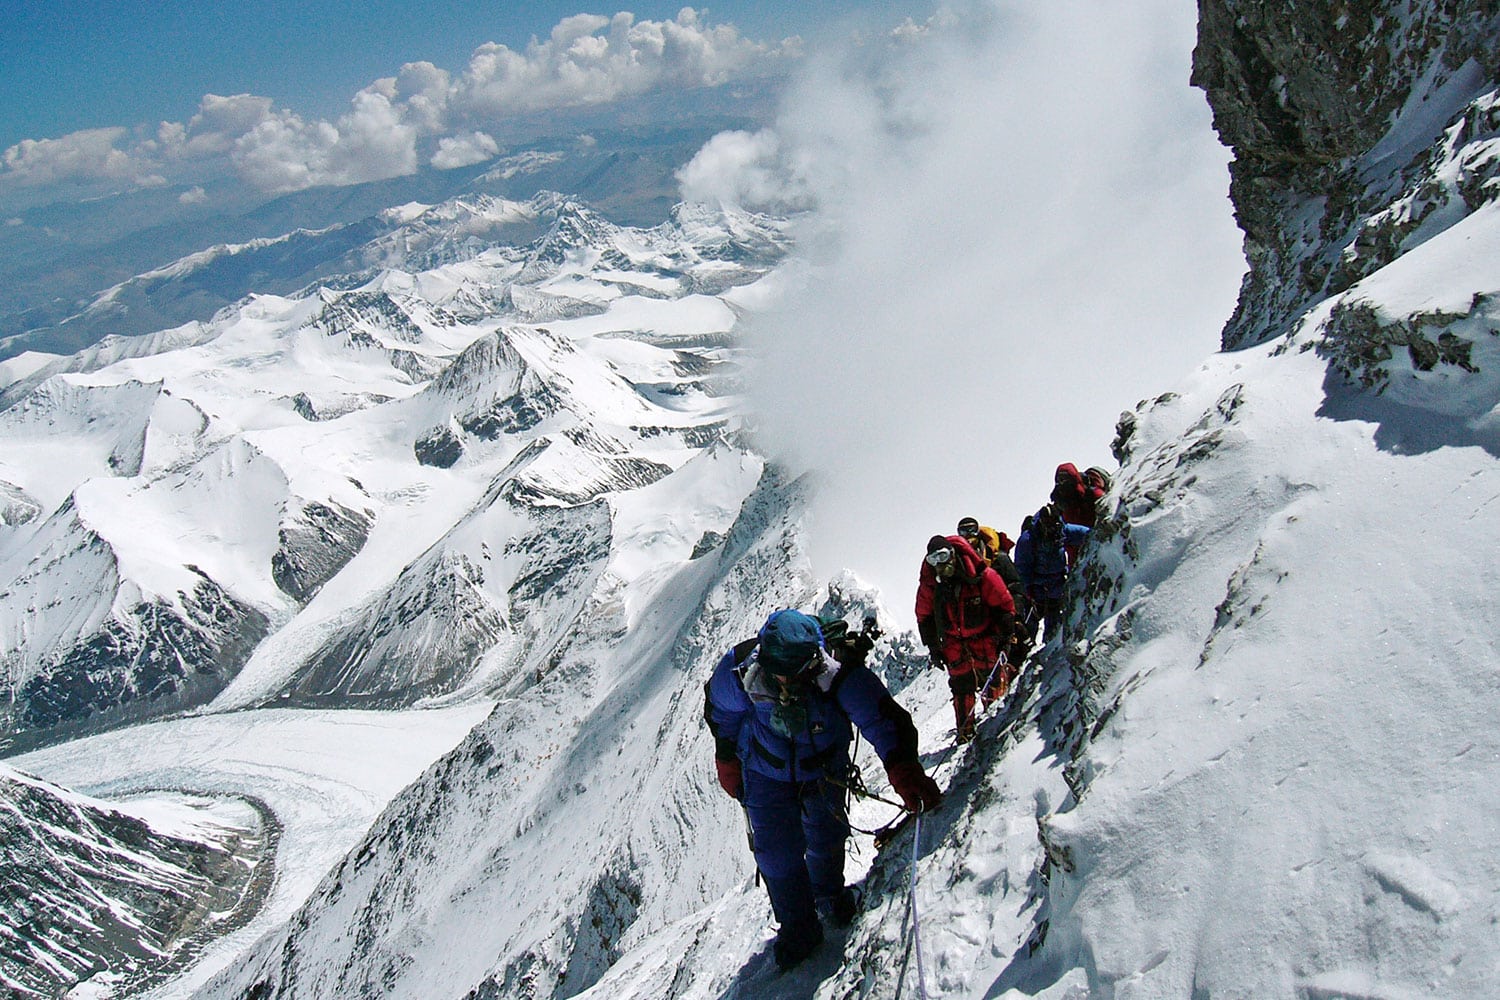 Escalar el monte Everest costará 8.000 euros a partir de esta primavera